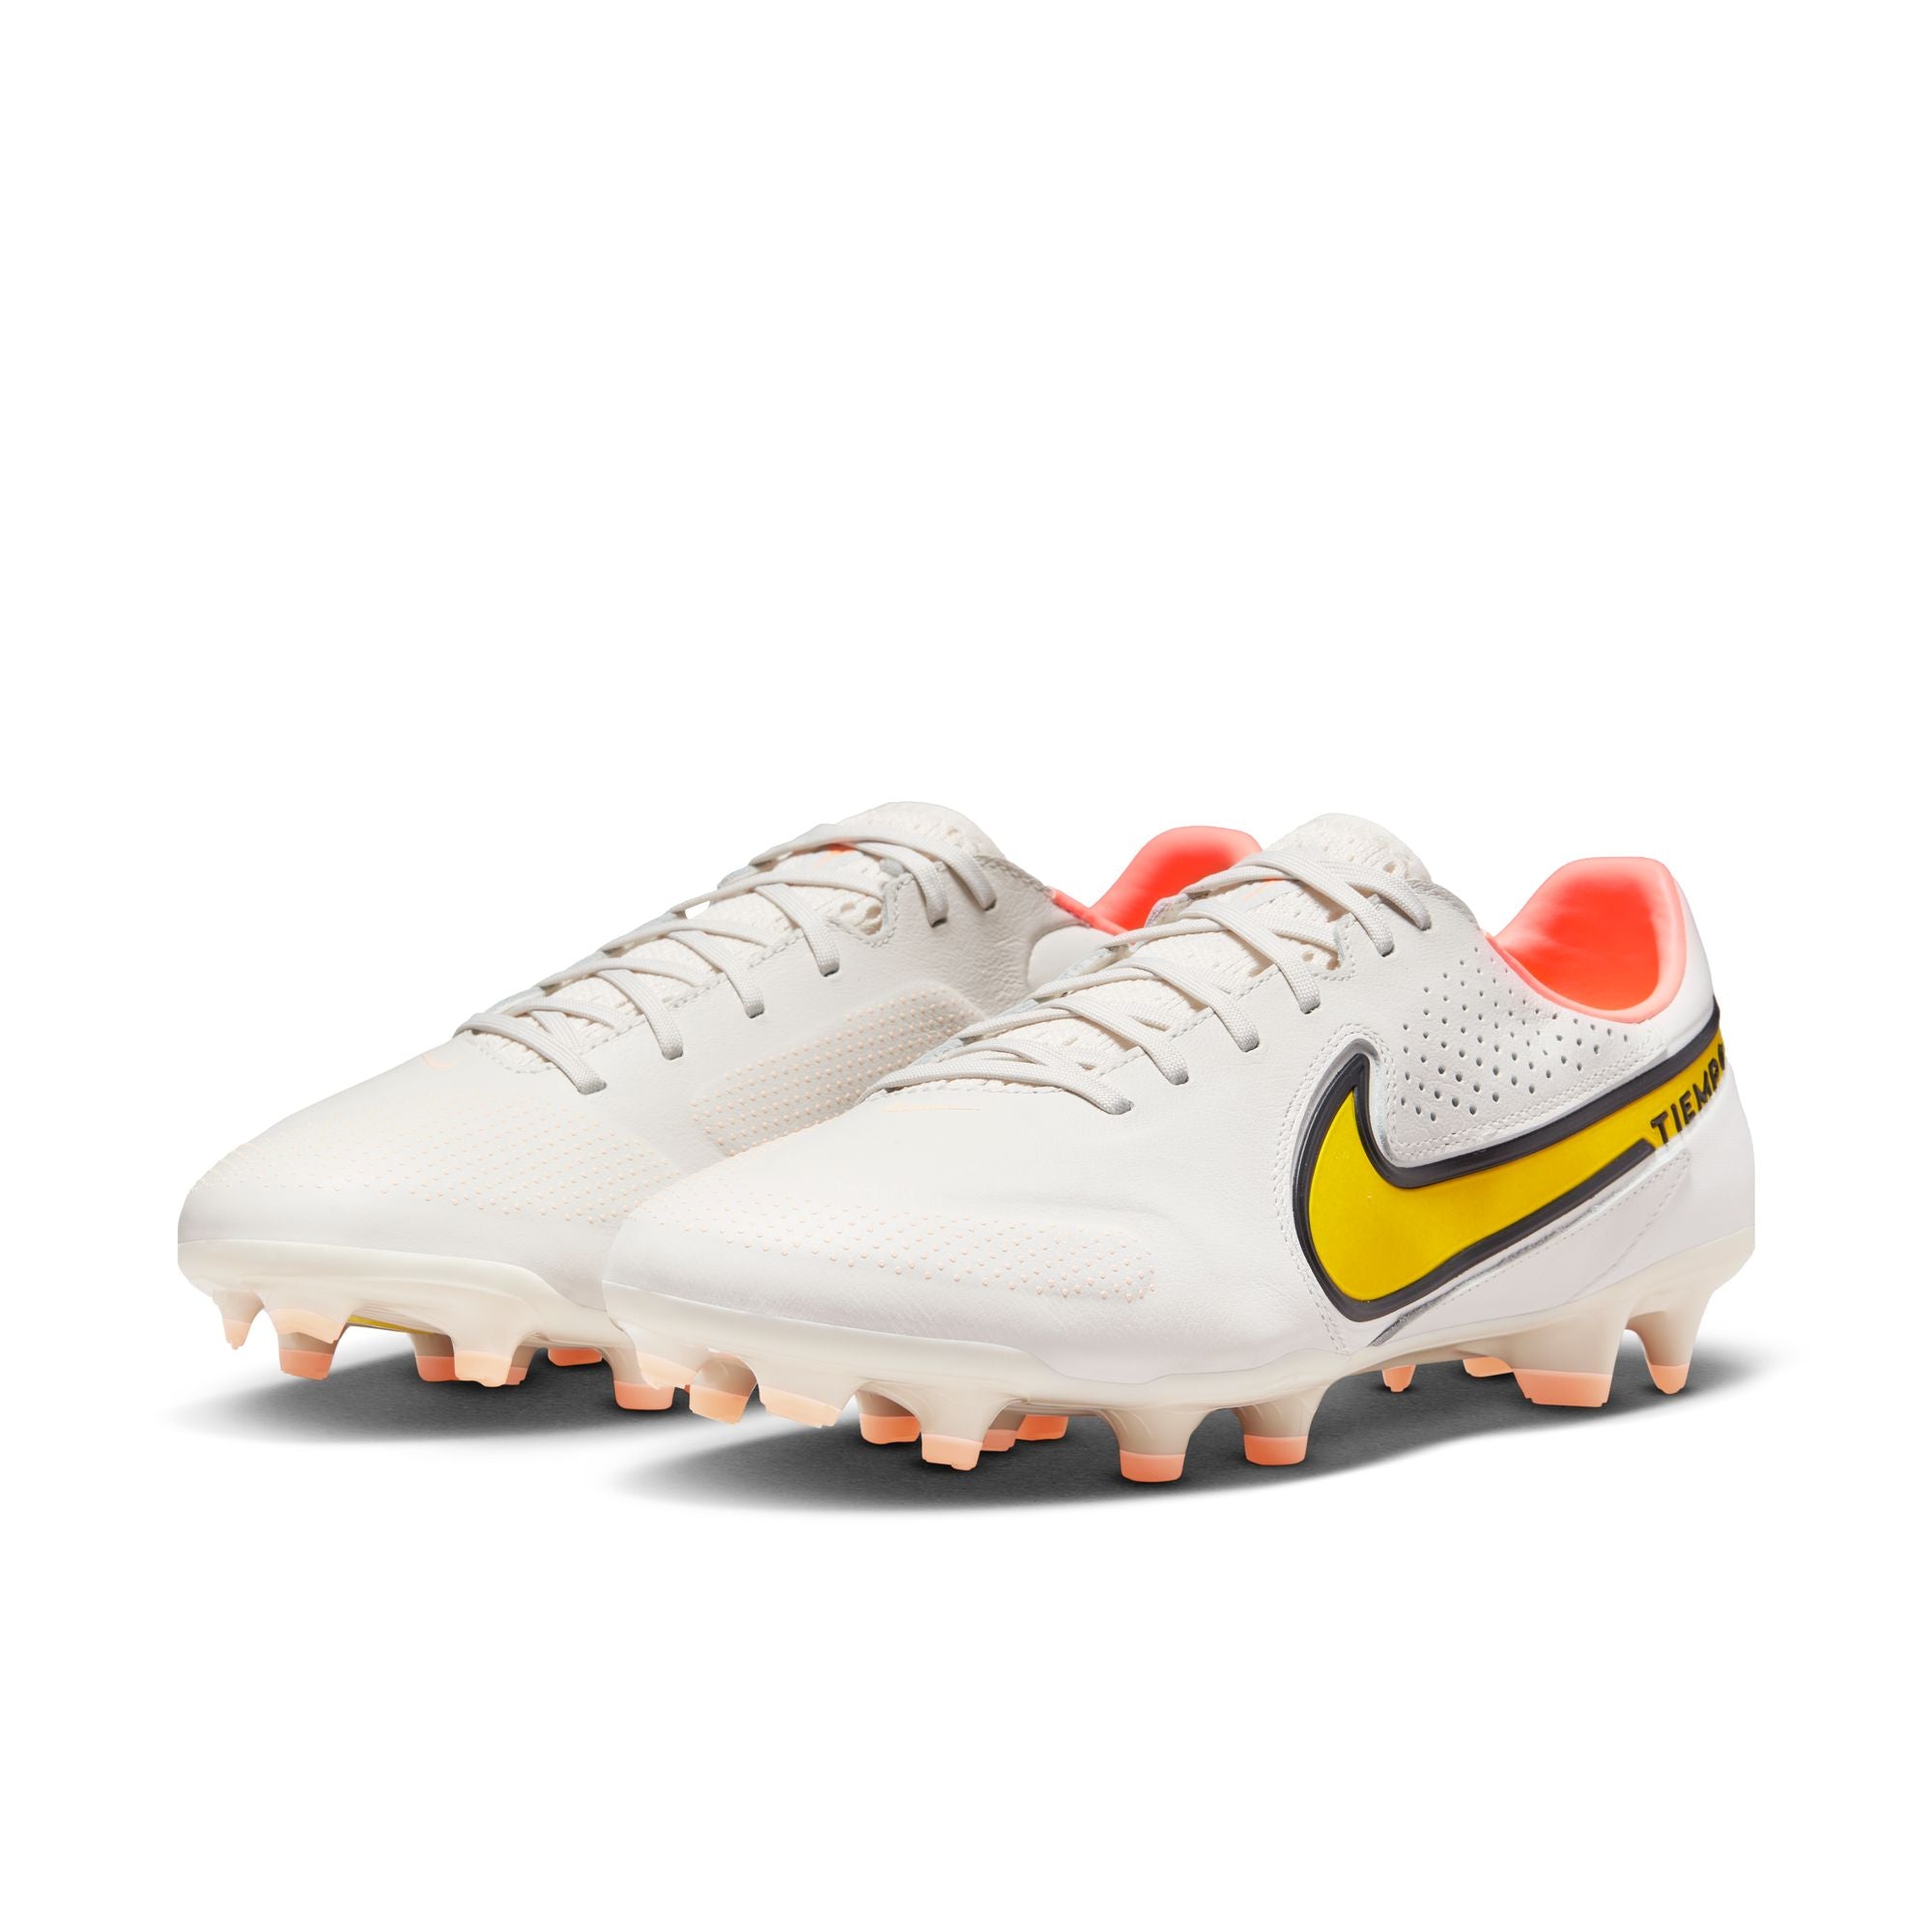 dodelijk longontsteking Muildier Nike Tiempo Legend 9 Pro FG Firm-Ground Soccer Cleat White